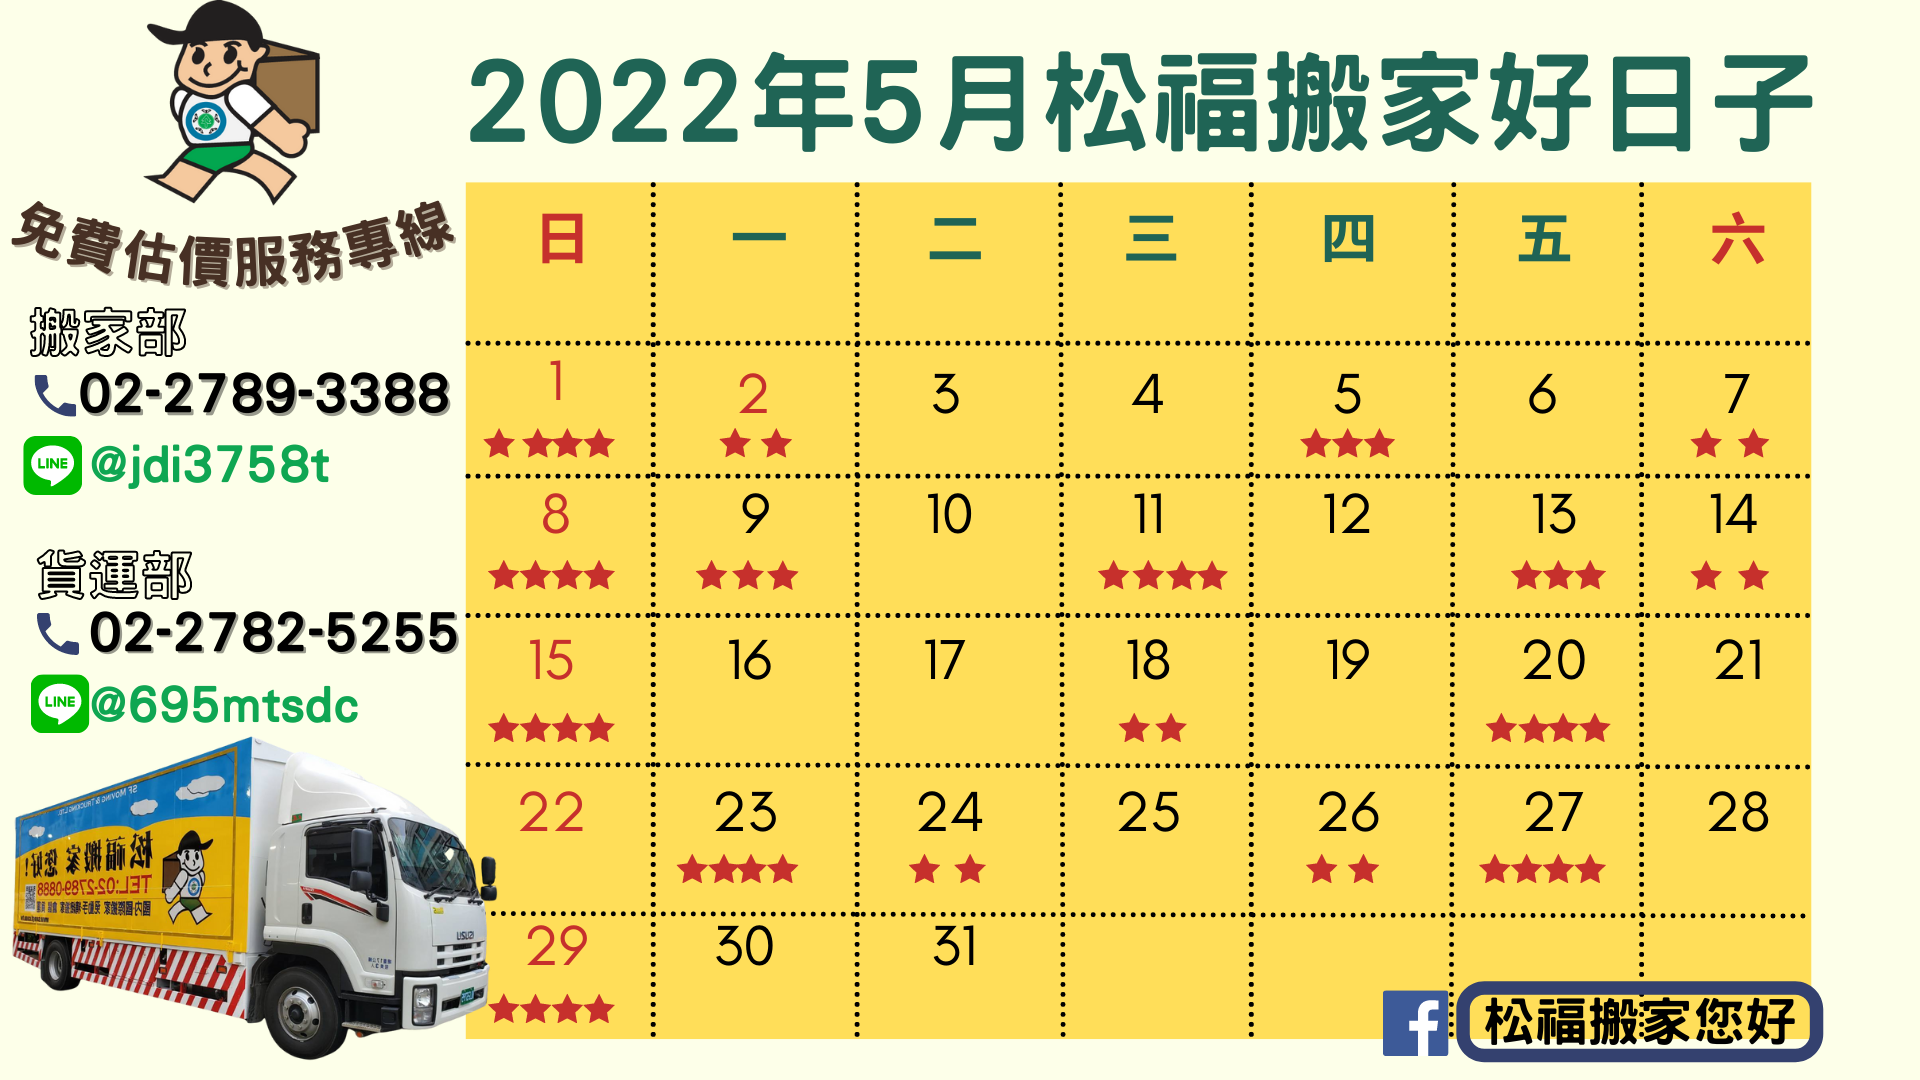 『2022年5月搬家好日子』請找松福搬家您好!推薦台北搬家、公司搬遷、精緻搬家、免動手打包、搬家公司優質首選!